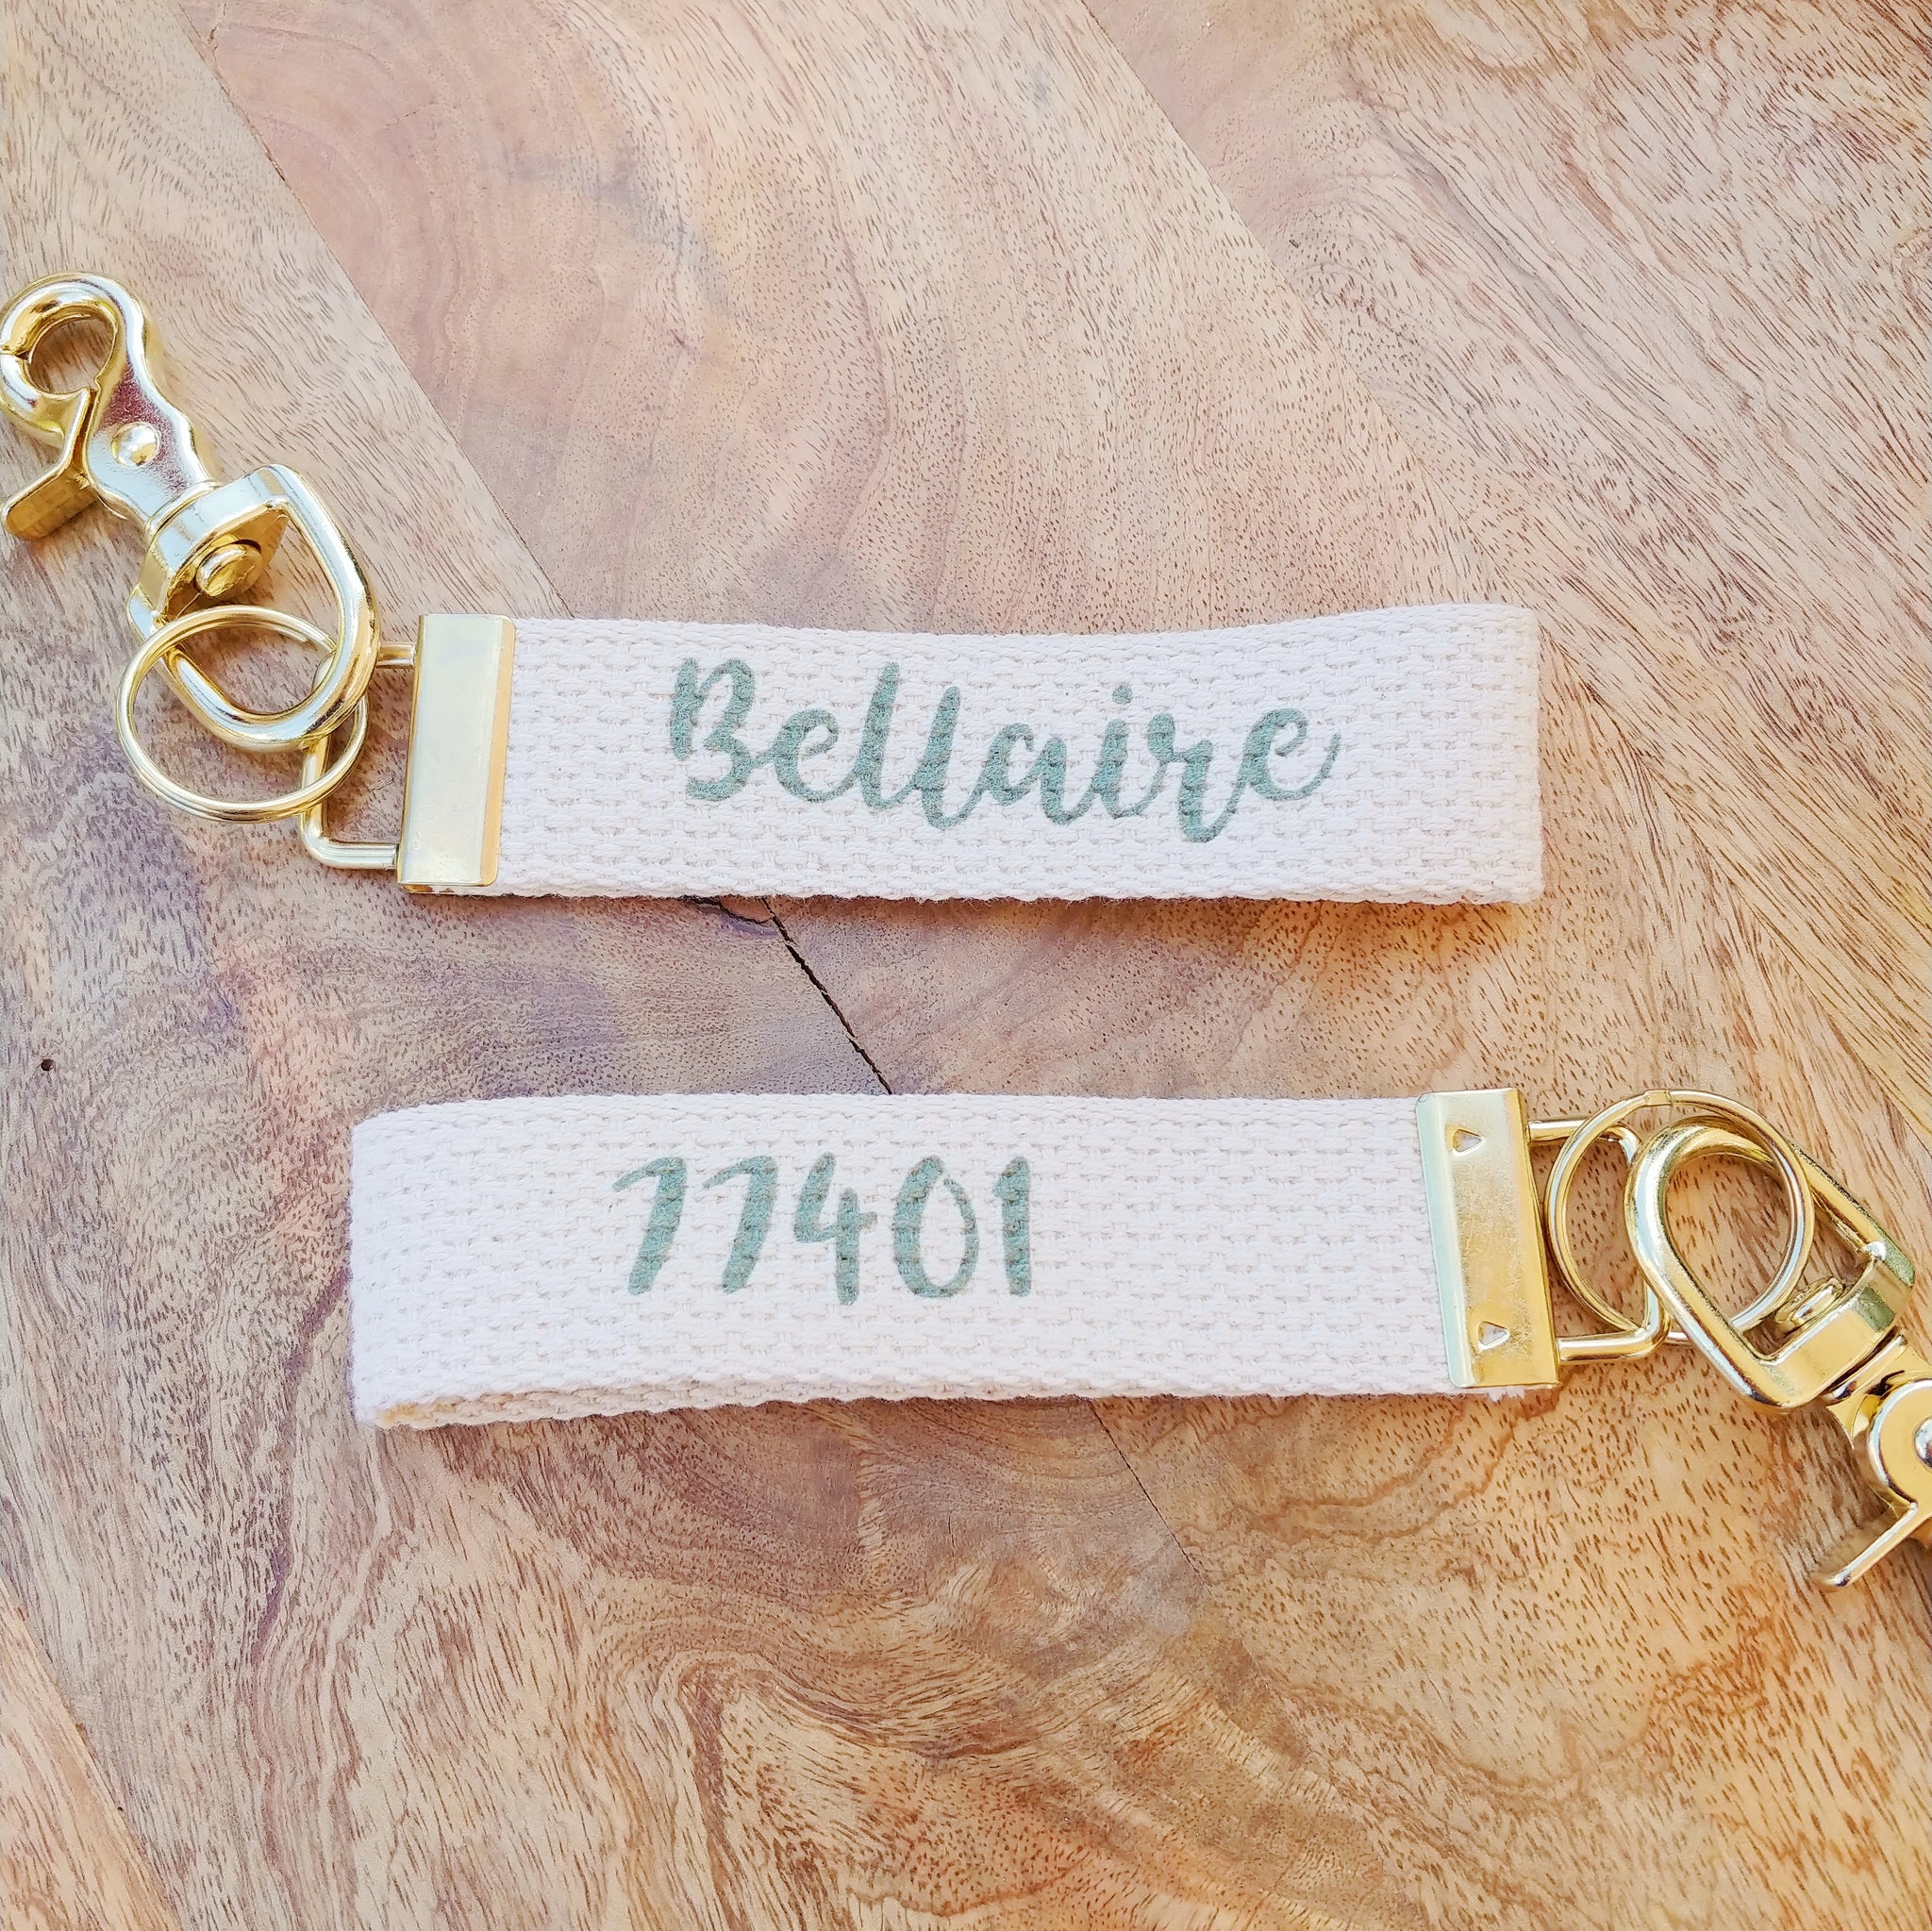 Bellaire 77401 Keychain - Fern